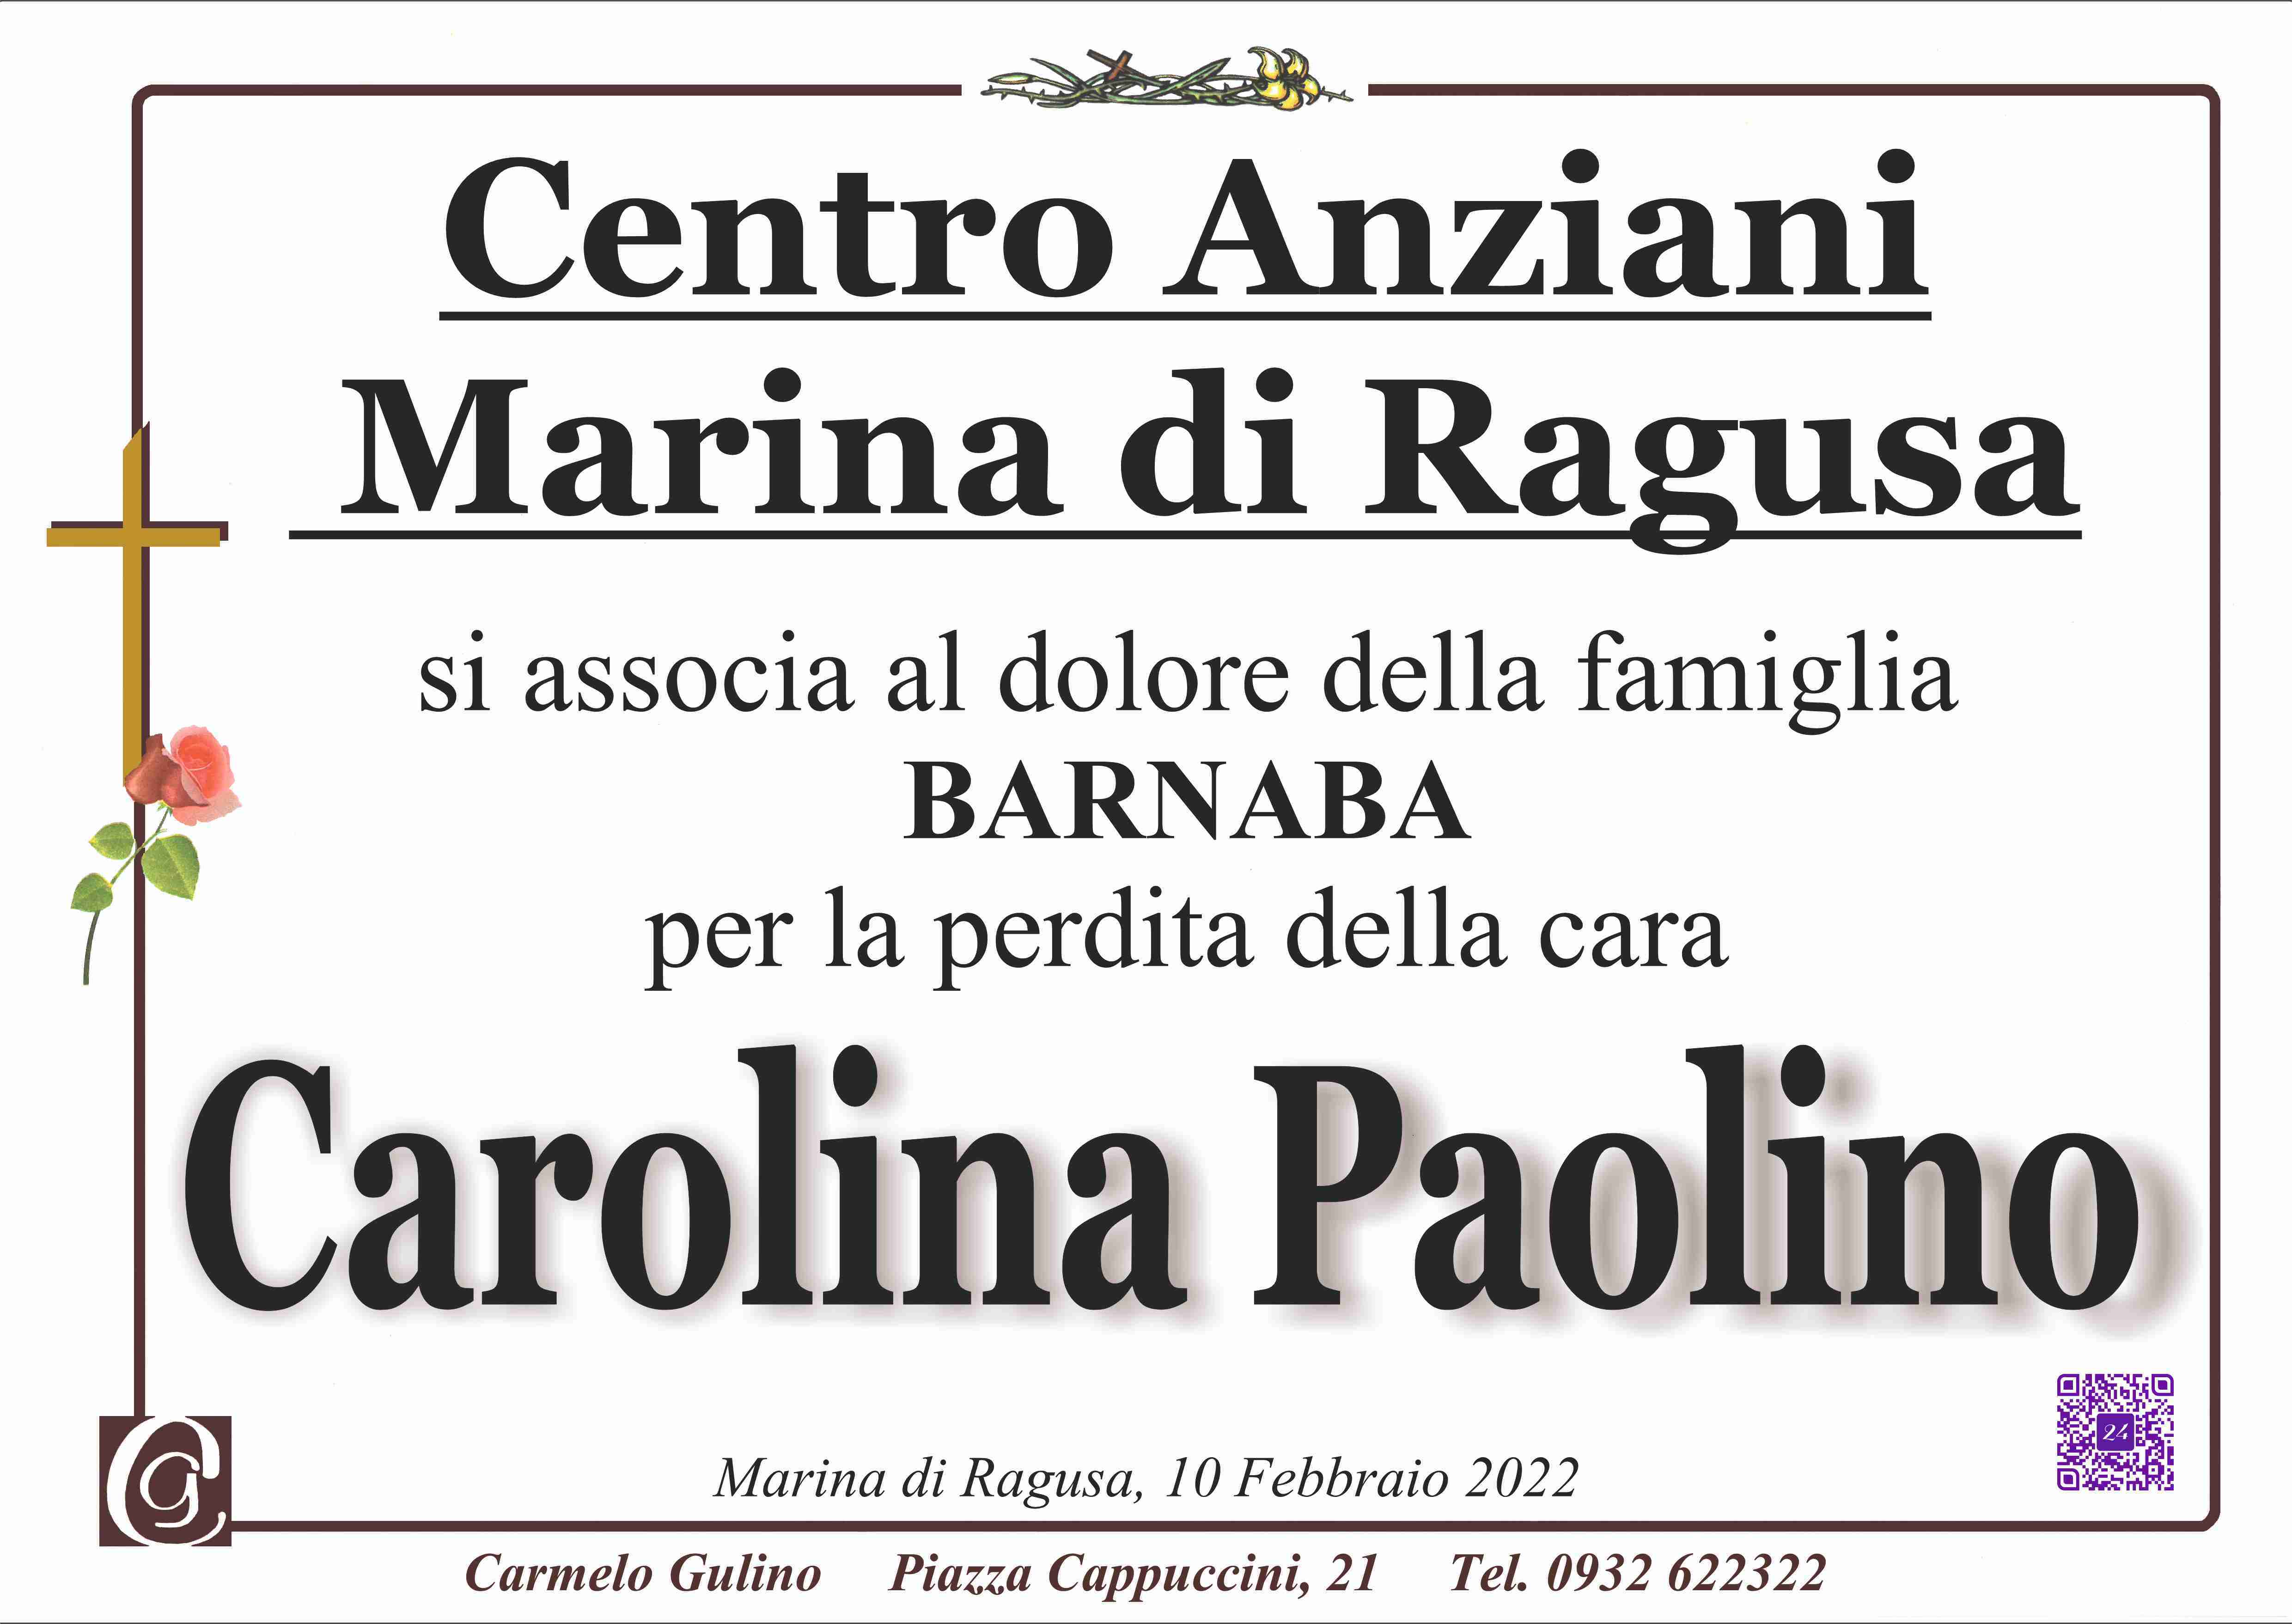 Carolina Paolino